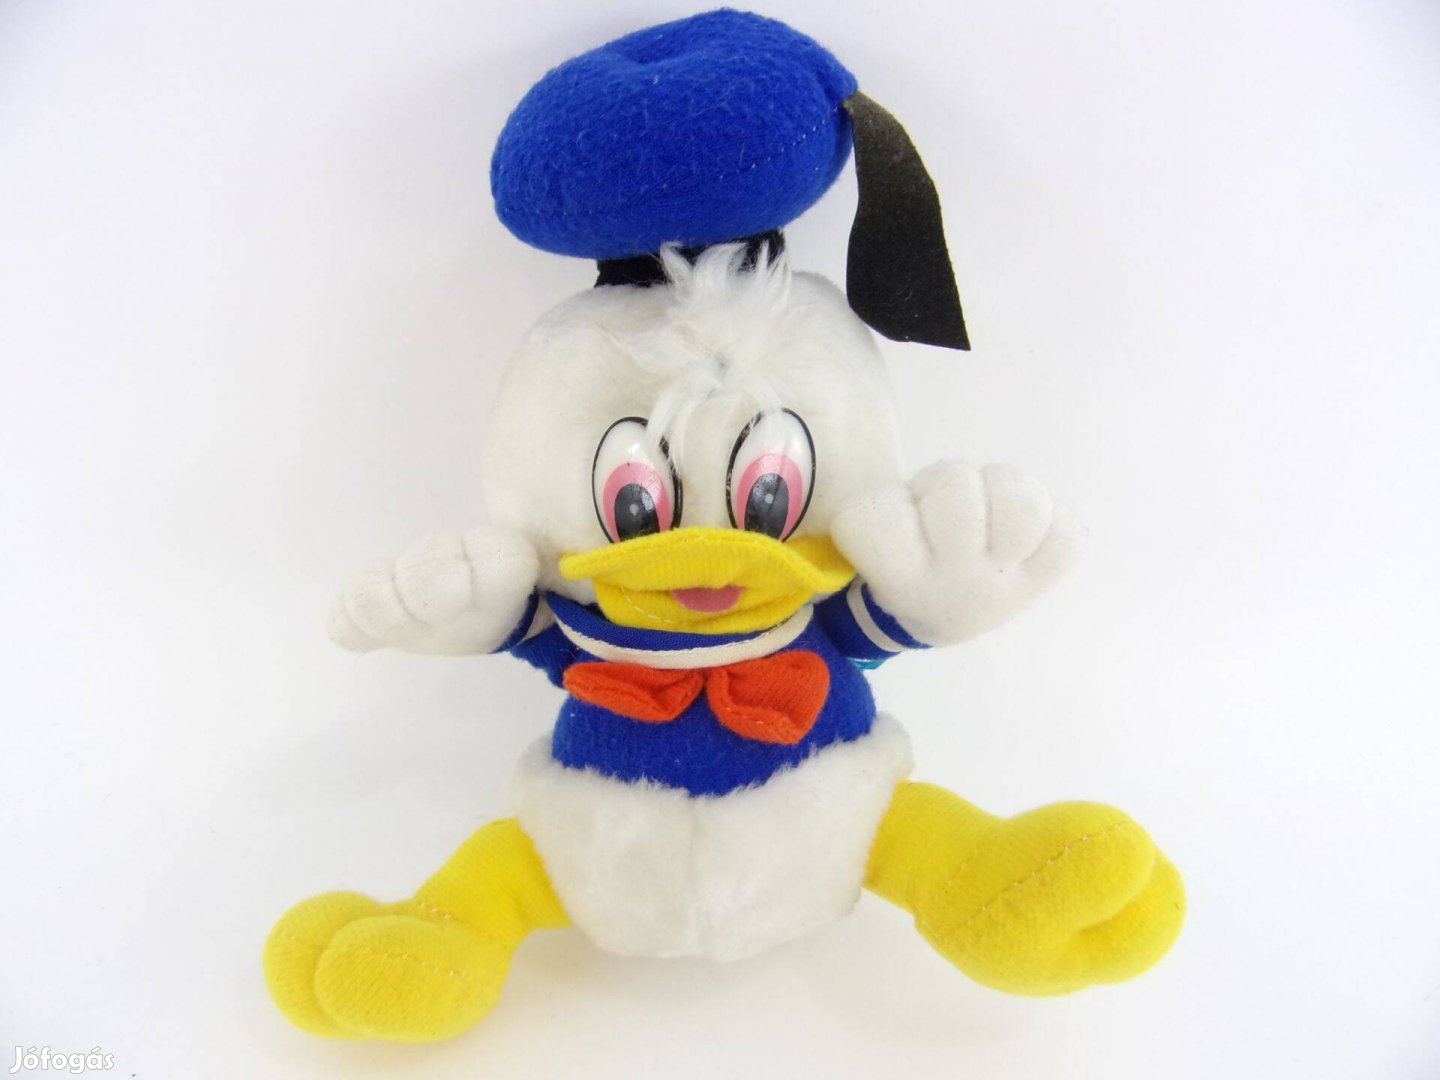 Vintage Donald baba kacsa plüss figura